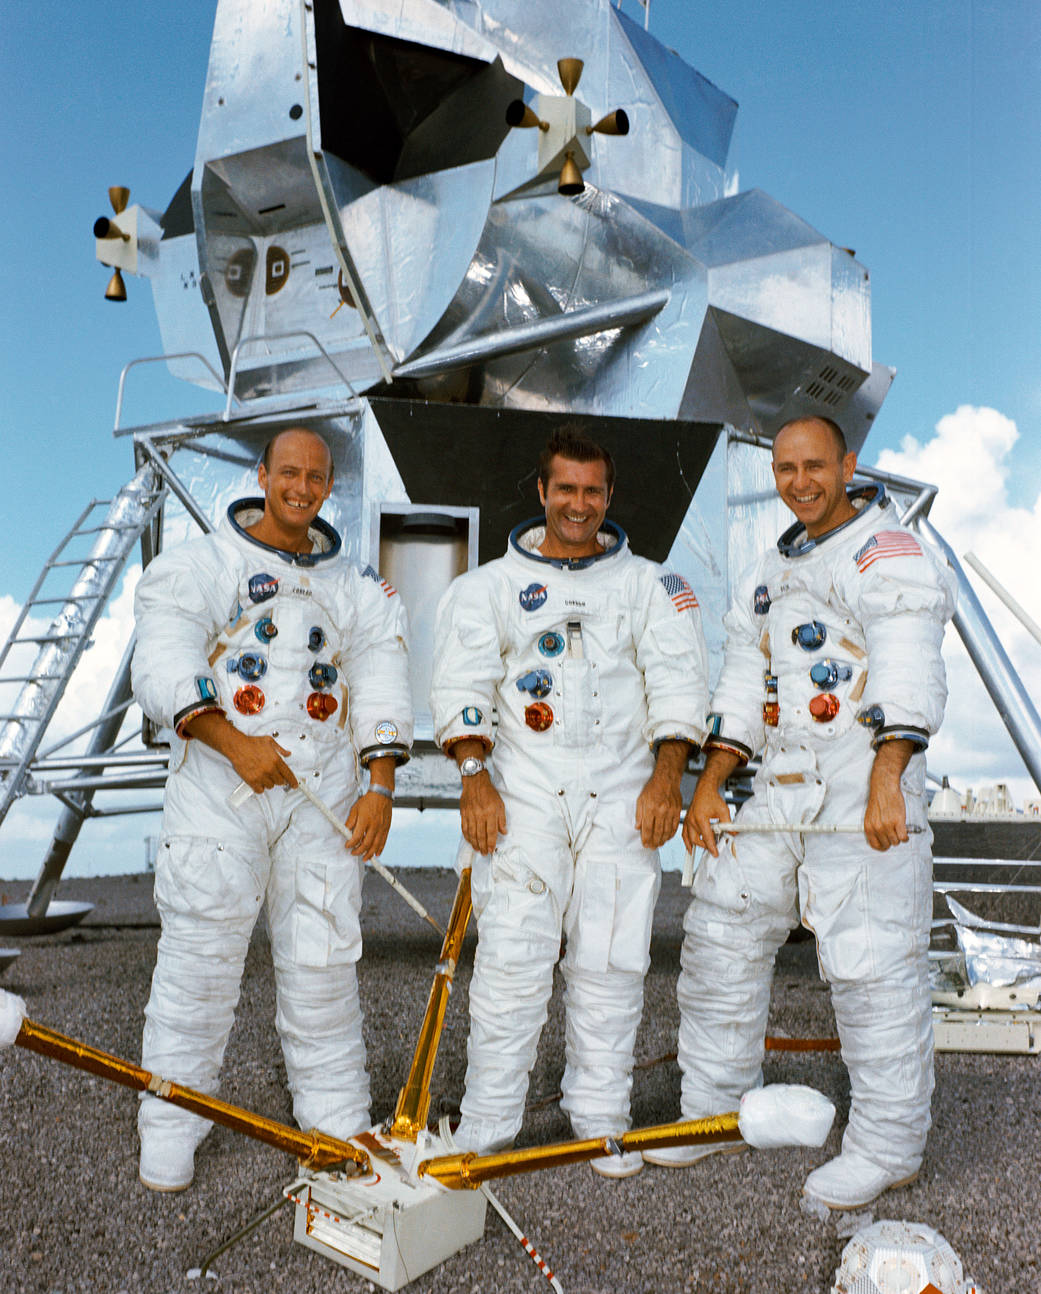 Apollo 12 crew portrait in spacesuits with lunar lander mockup